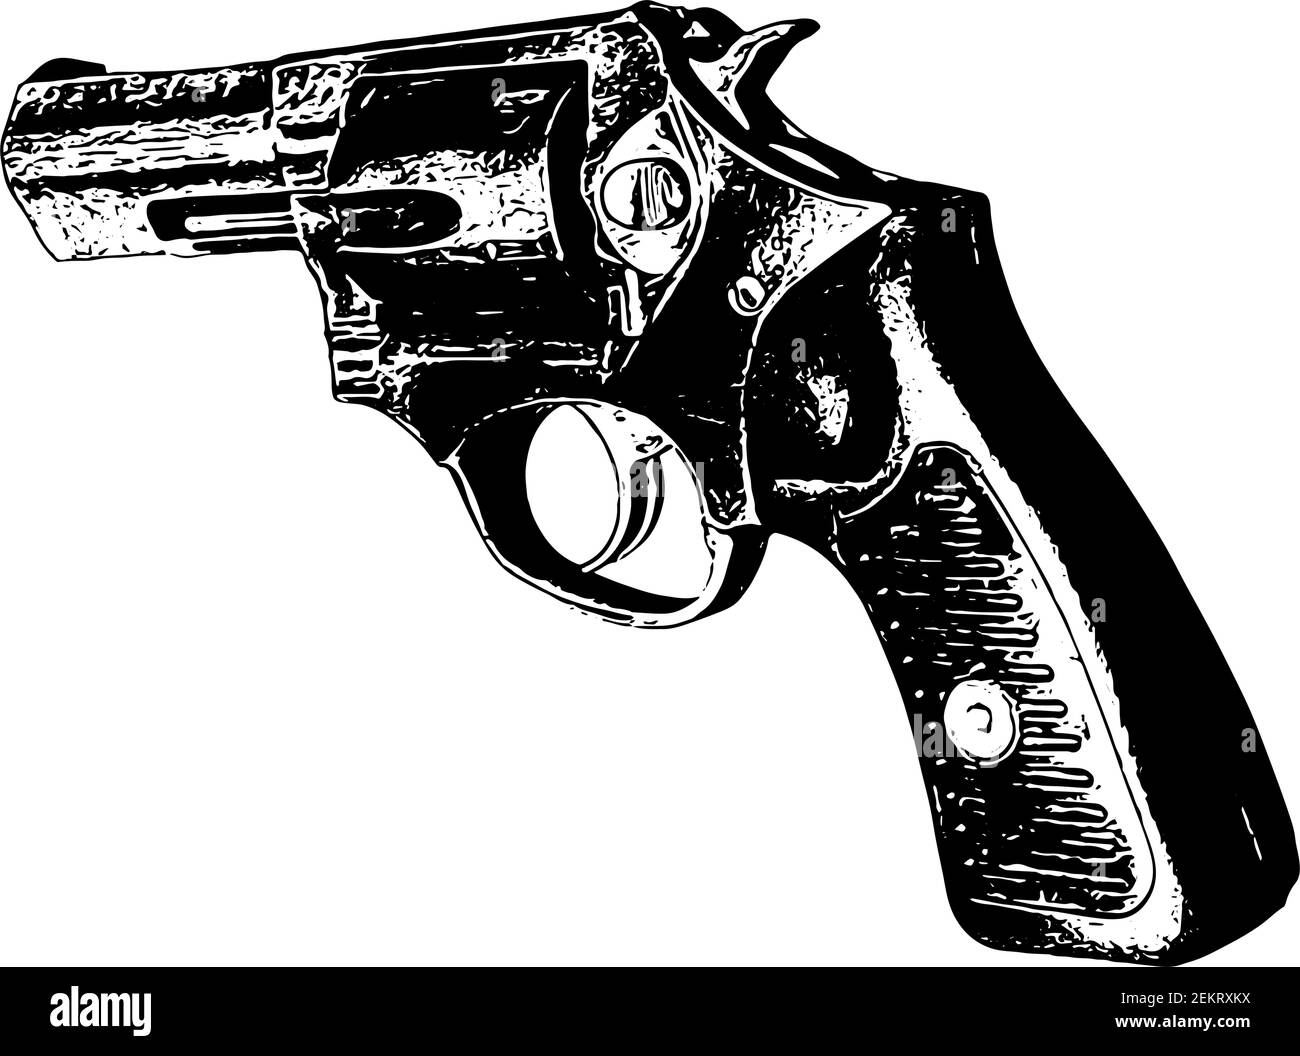 Revolver hand gun illustration Stock Vector